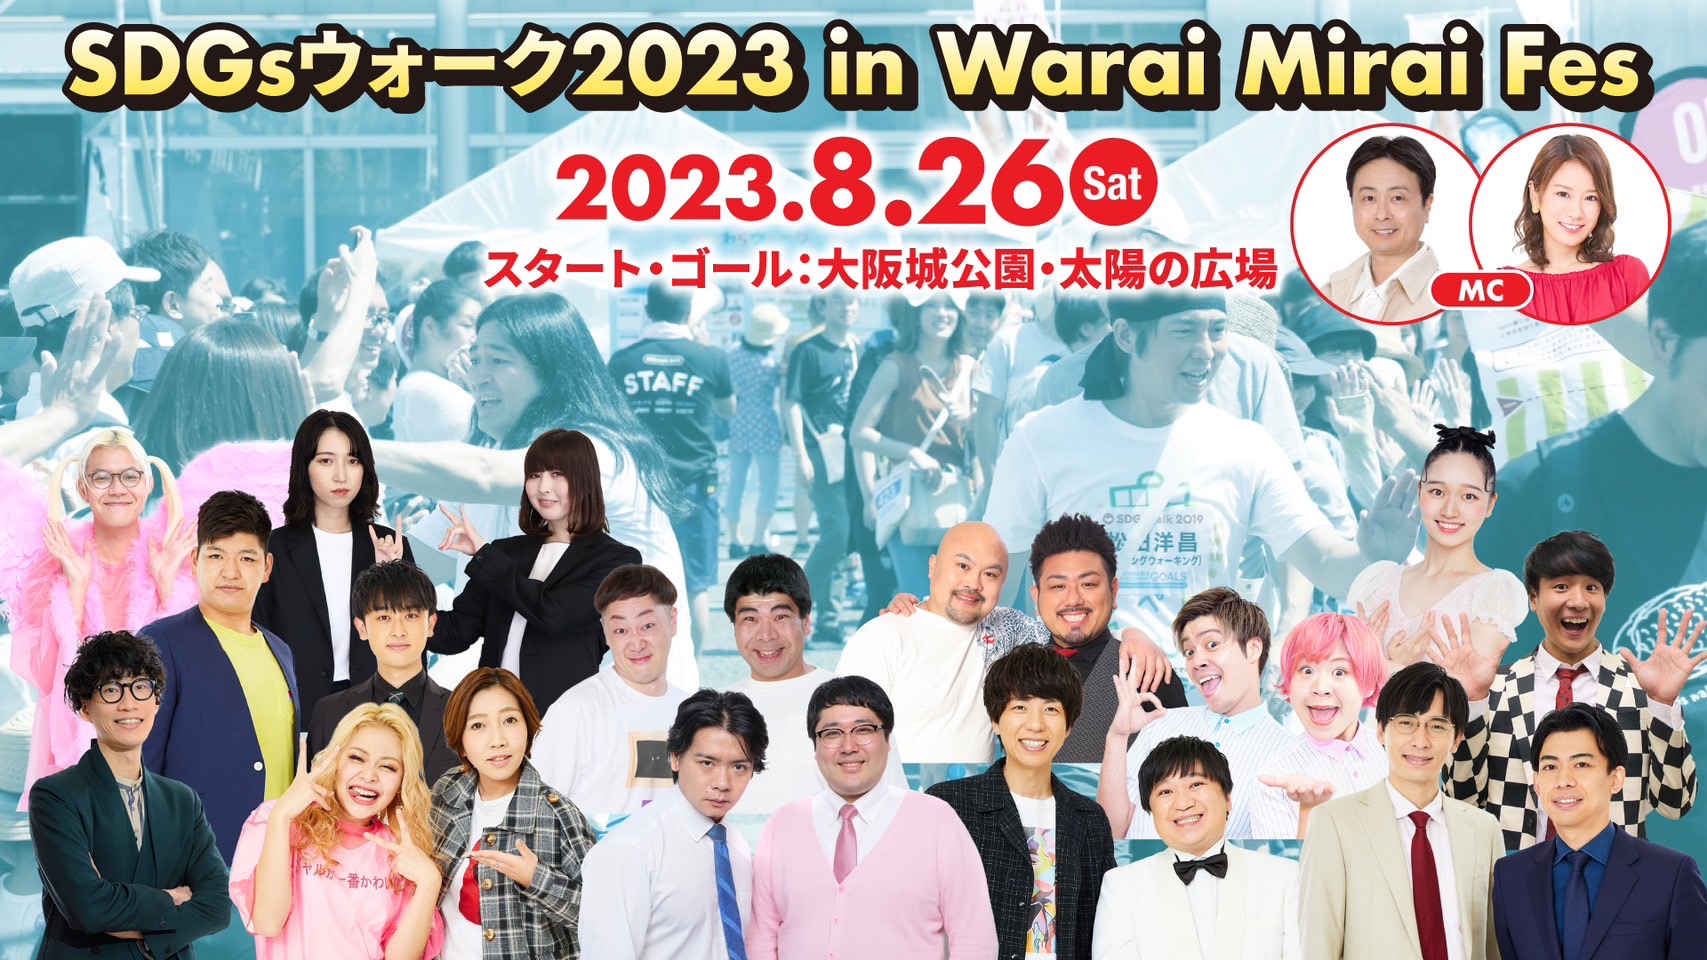 Warai Mirai Fes 2023～Road to EXPO 2025～』第二弾ラインナップ発表 